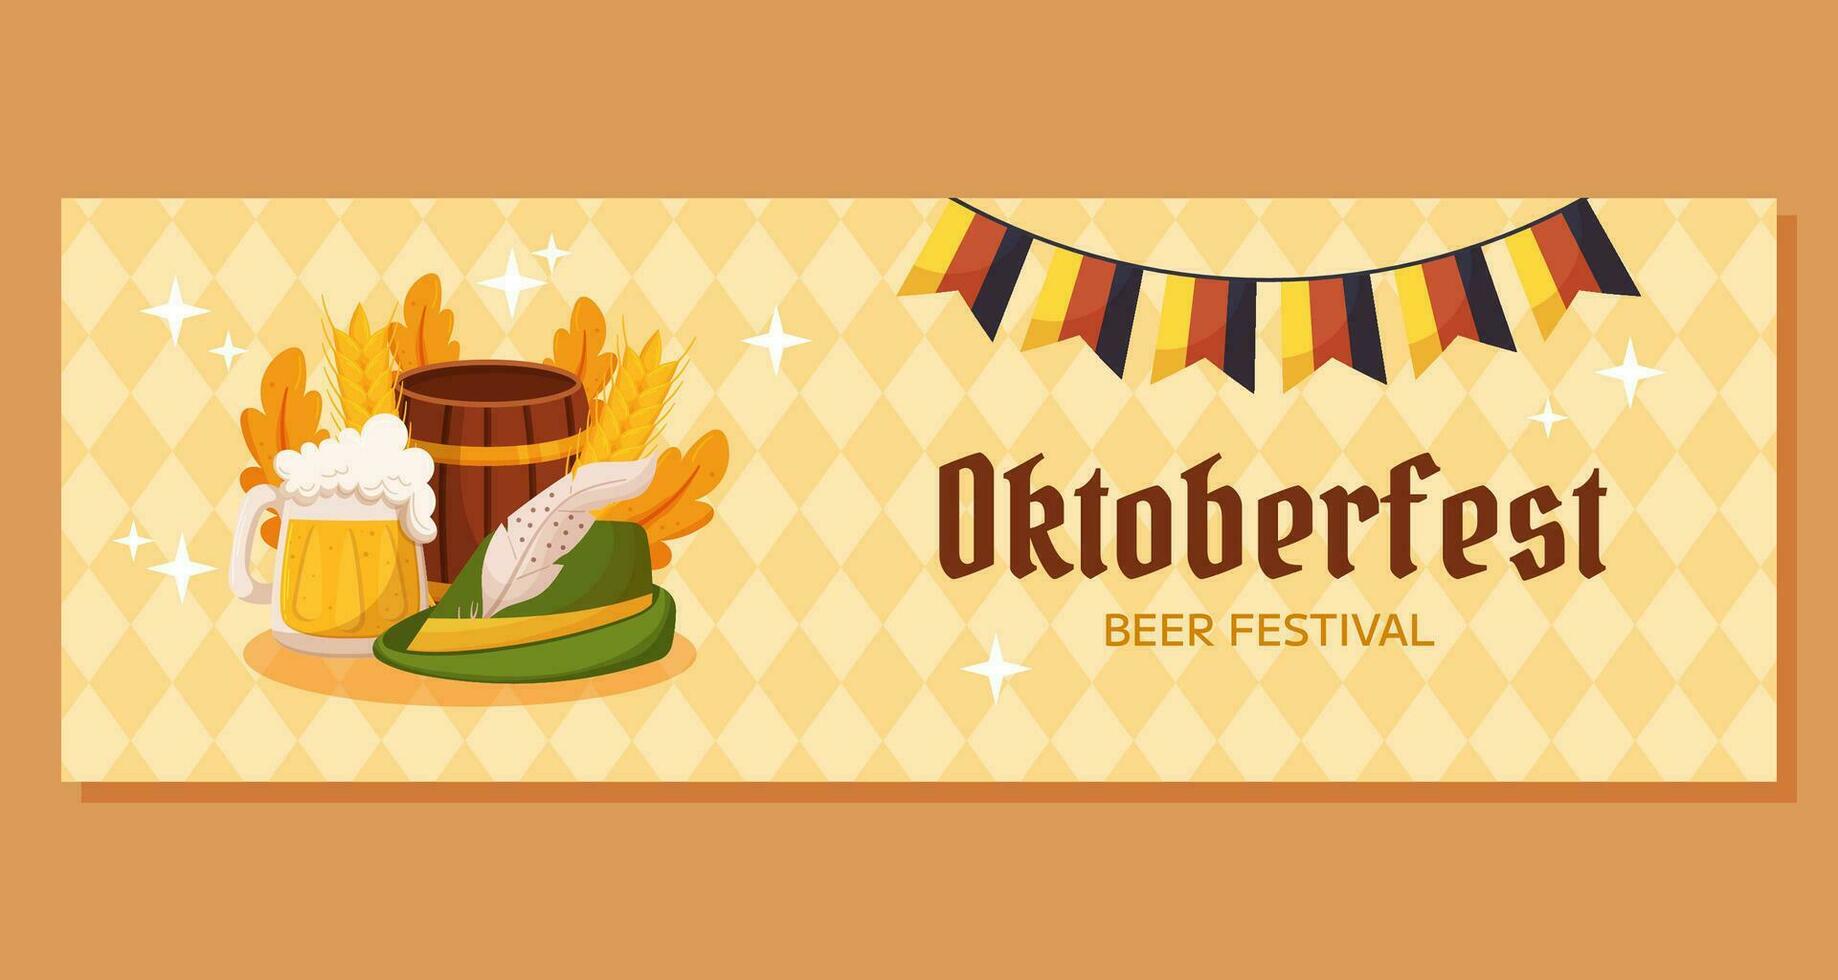 Oktoberfest Deutsche Bier Festival horizontal Banner Vorlage. Design mit Tiroler Hut, Bier Becher, hölzern Fass, Deutschland Farben festlich Girlande, Weizen, Blätter. Licht Gelb Rhombus Muster vektor